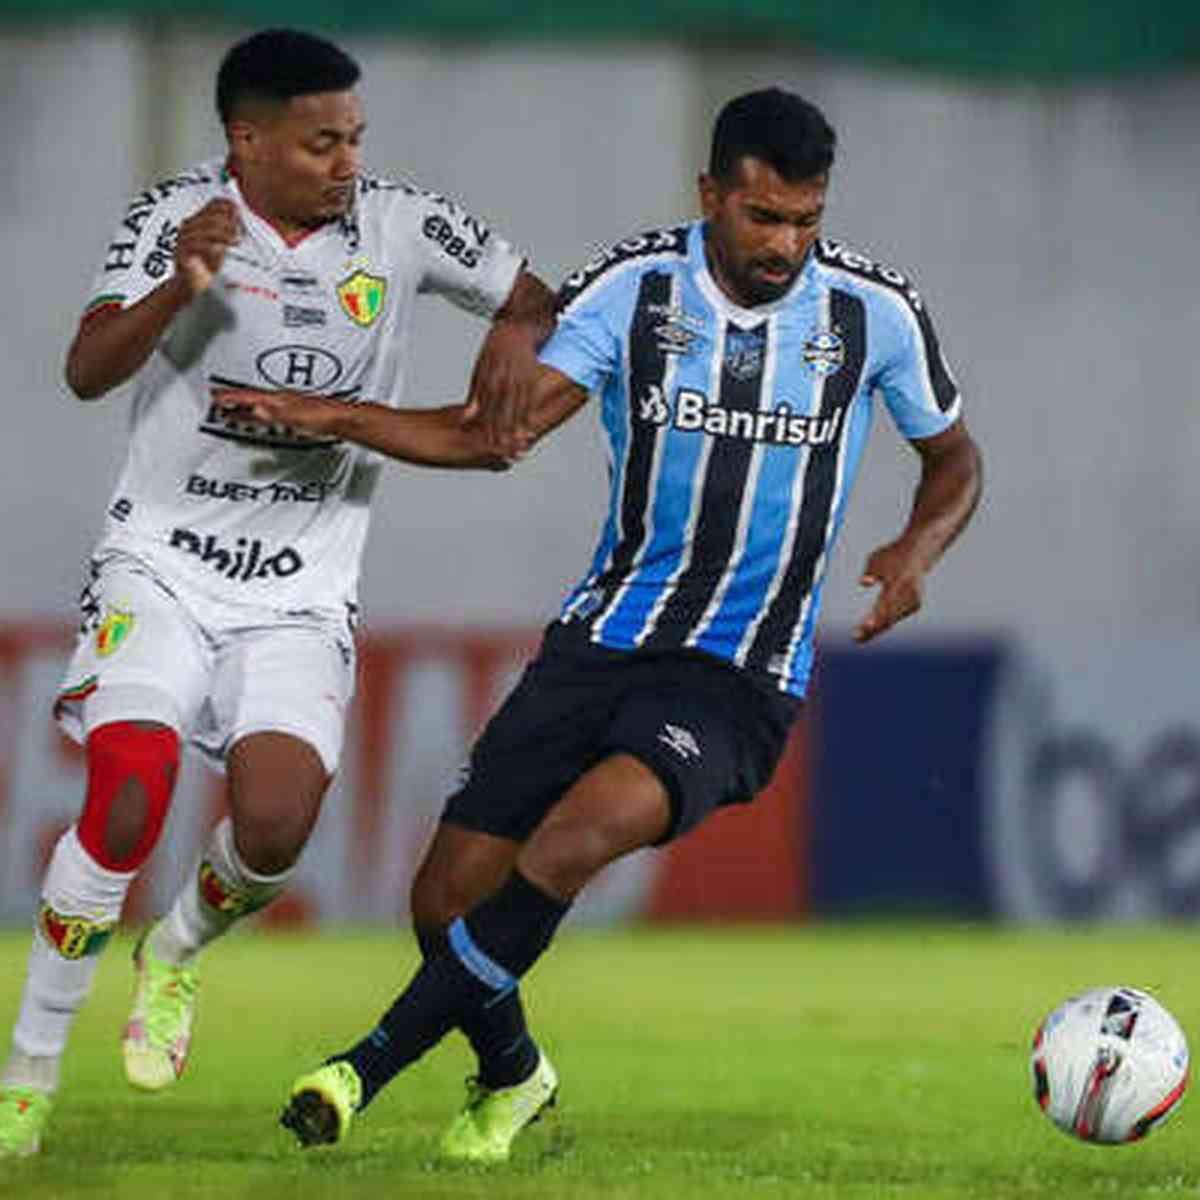 Ceará SC vs. Tombense: A Clash of Titans